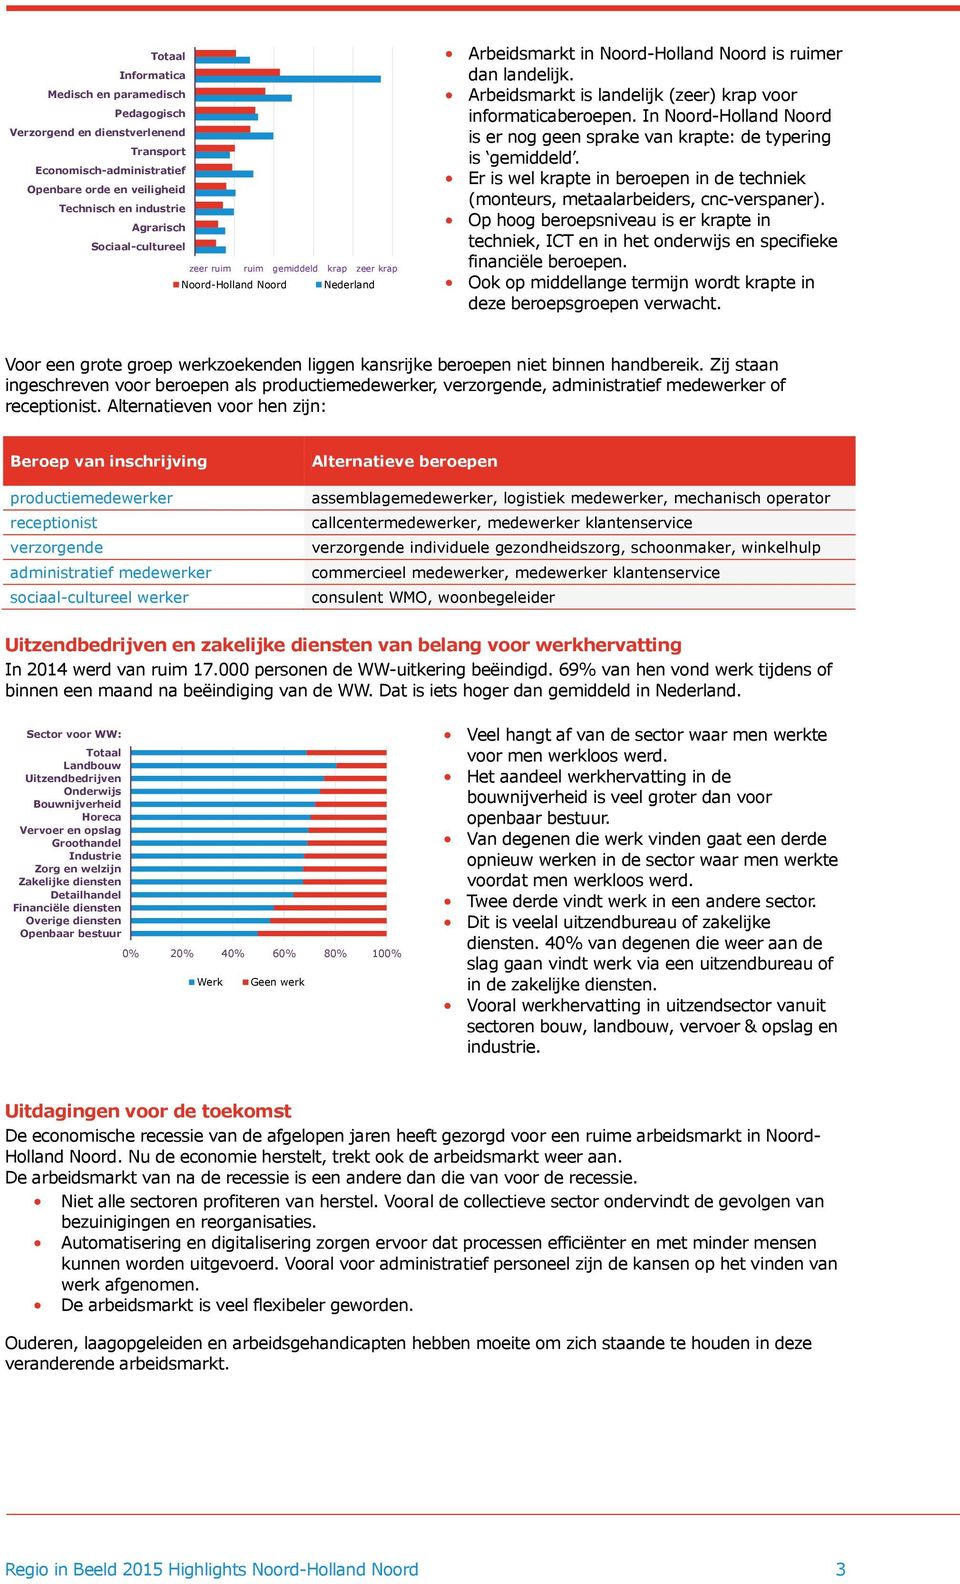 Arbeidsmarkt is landelijk (zeer) krap voor informaticaberoepen. In Noord-Holland Noord is er nog geen sprake van krapte: de typering is gemiddeld.